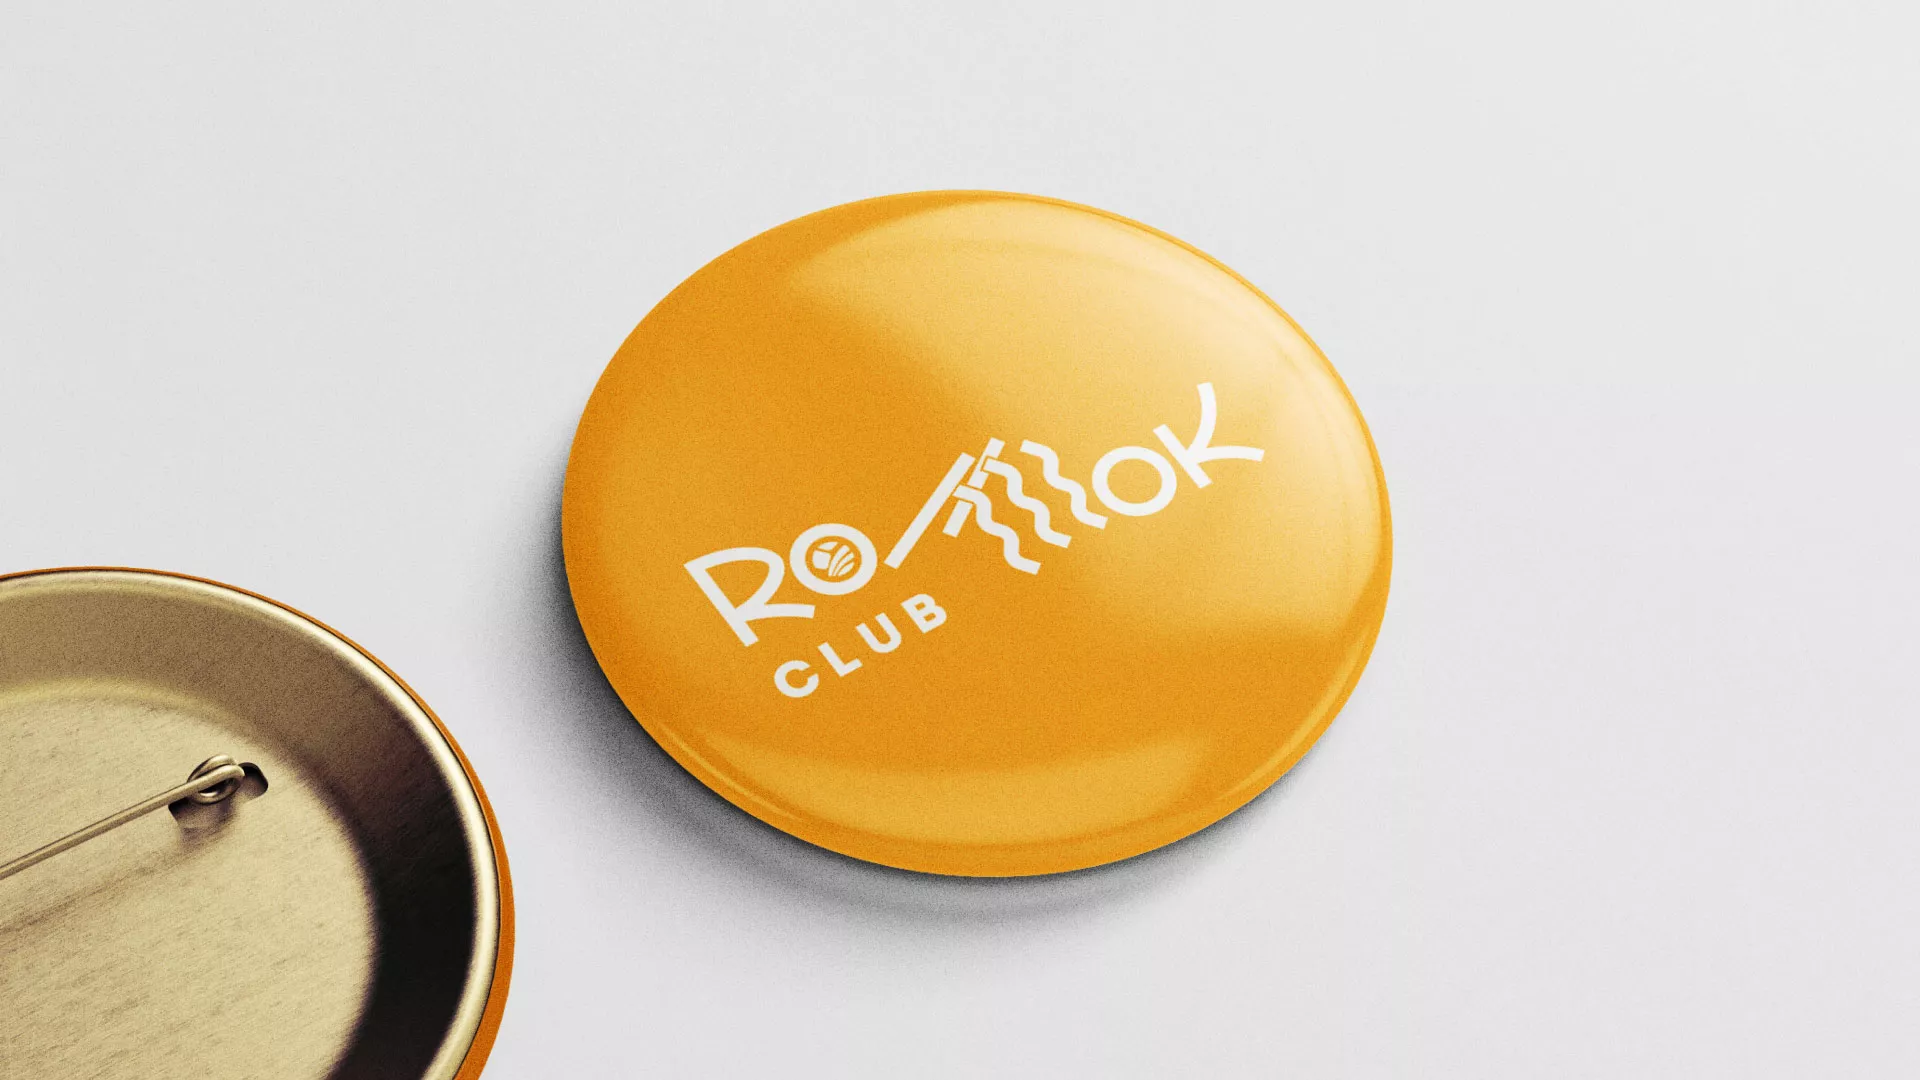 Создание логотипа суши-бара «Roll Wok Club» в Химках